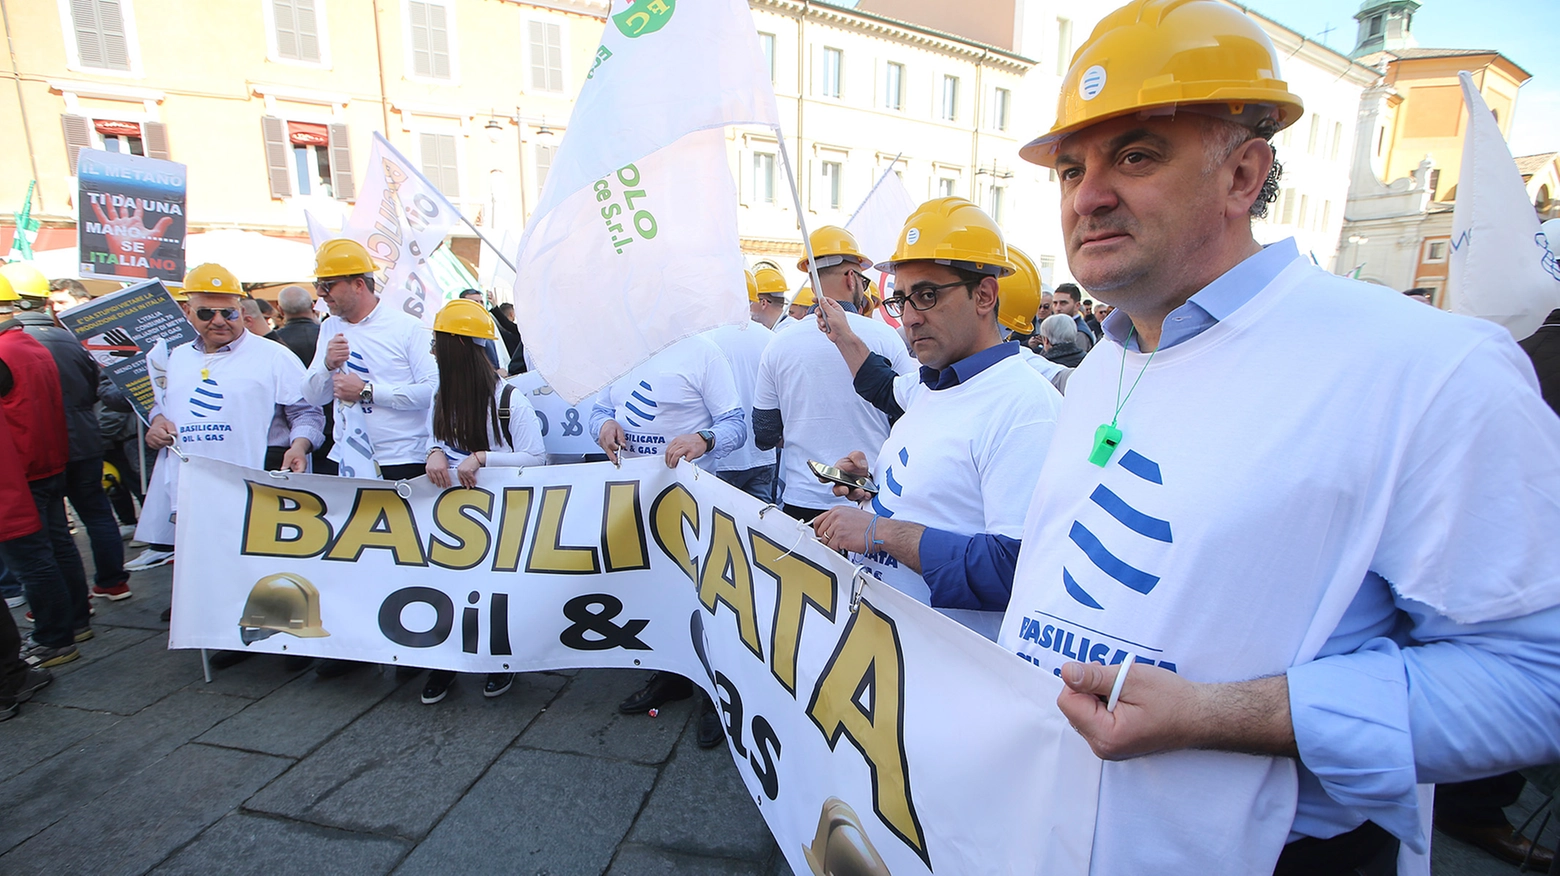 La manifestazione Oil & Gas a Ravenna (foto Zani)